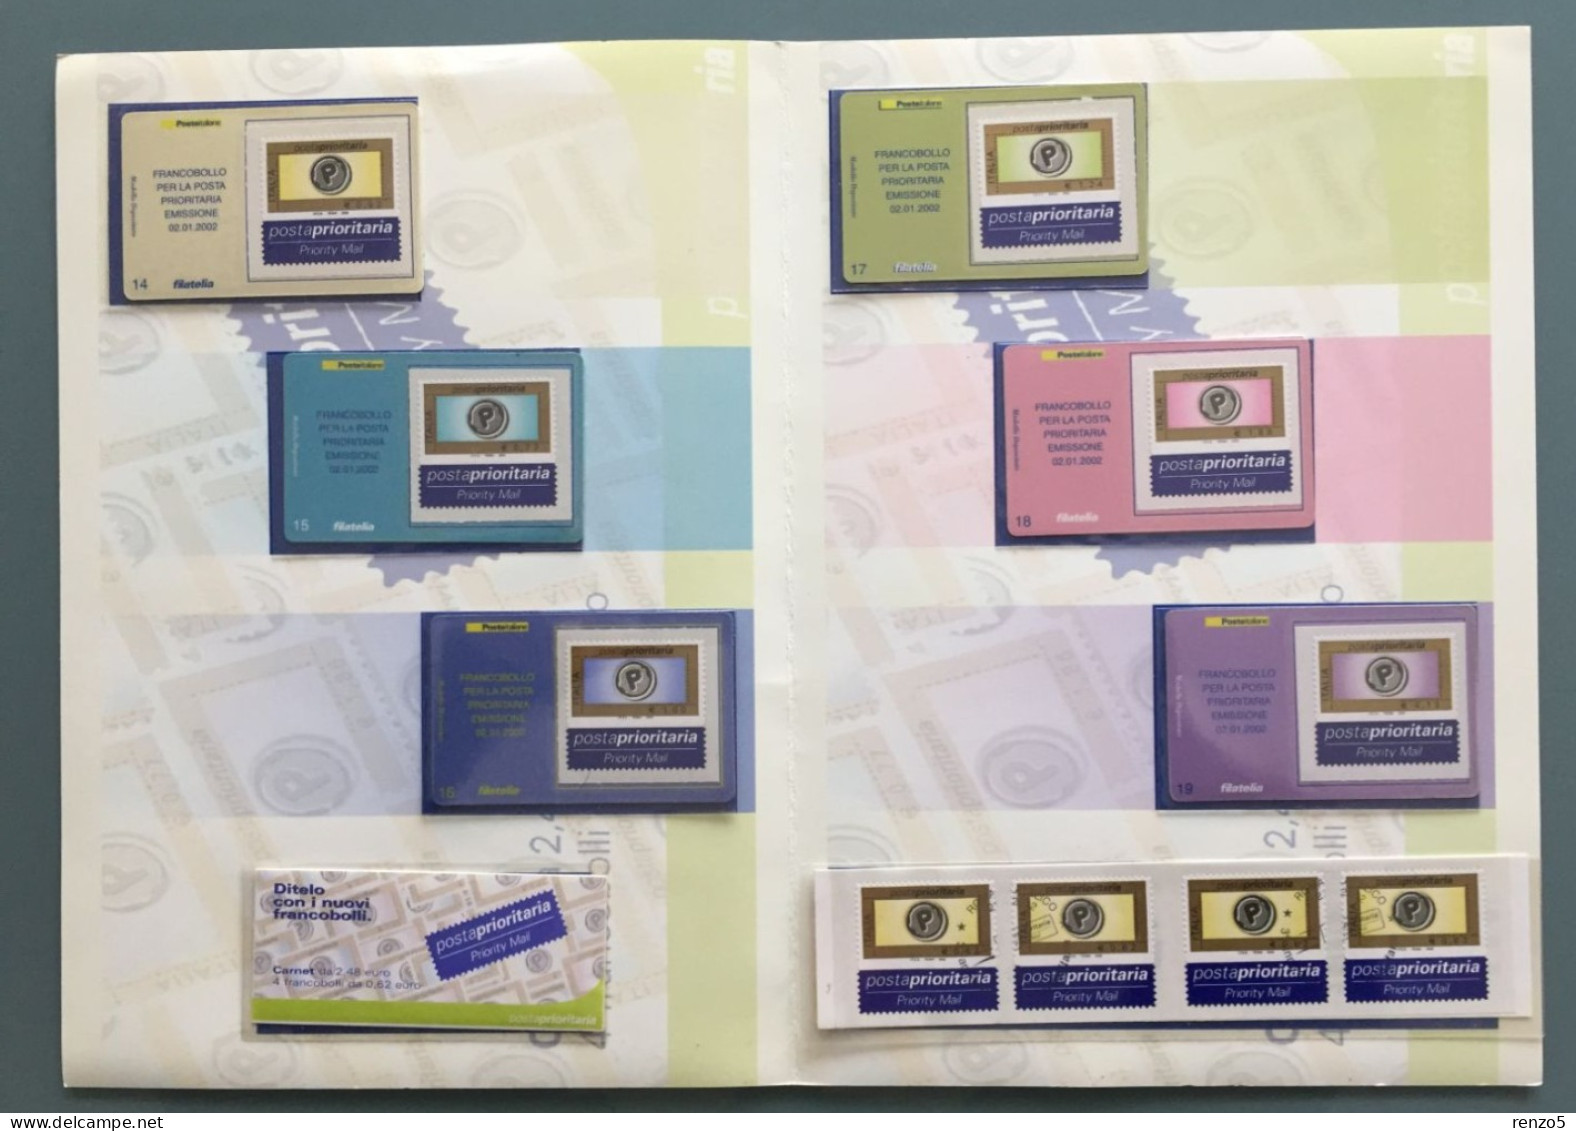 2002 Italia - Folder - Posta Prioritaria E 6 Tessere Filateliche - 18 - Paquetes De Presentación